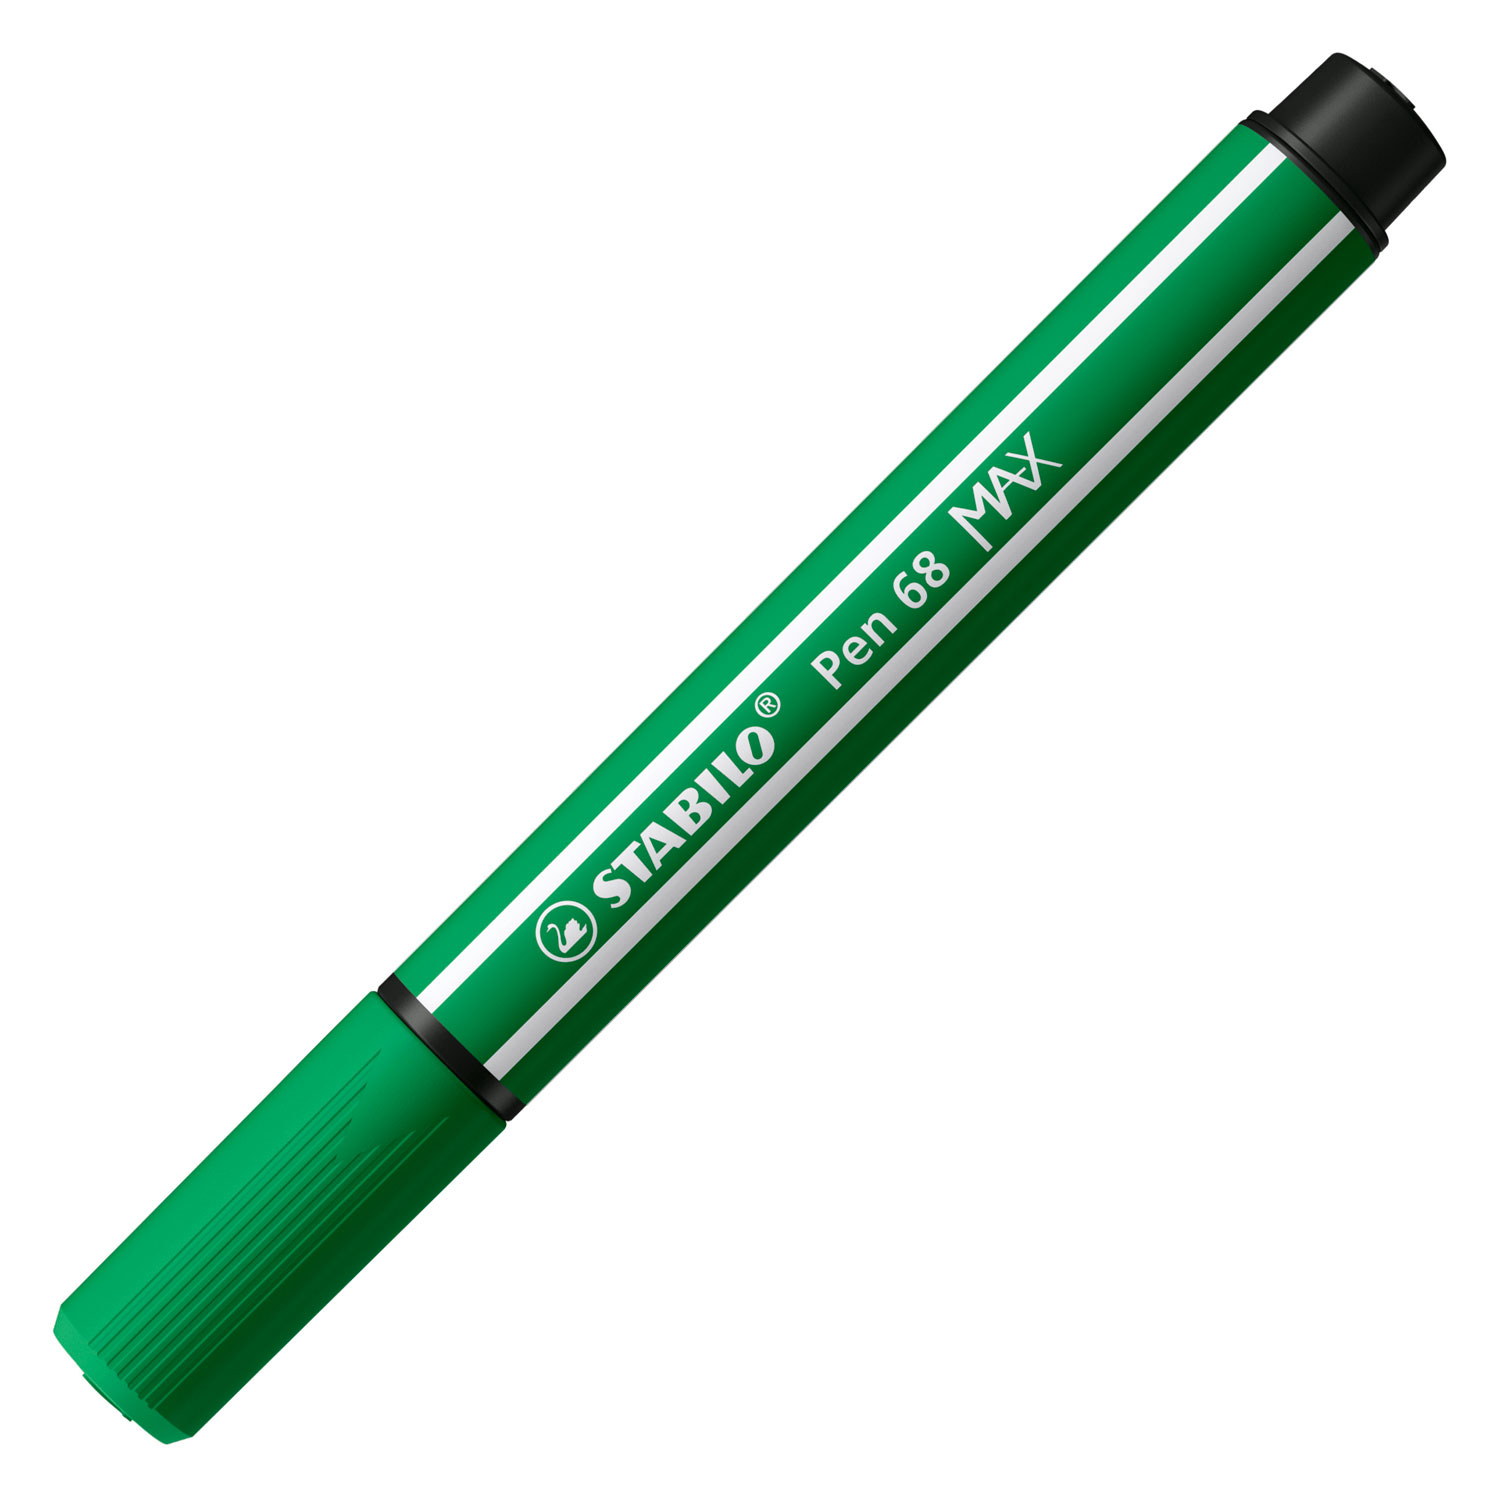 STABILO Pen 68 MAX - Feutre à pointe biseautée épaisse - Vert émeraude